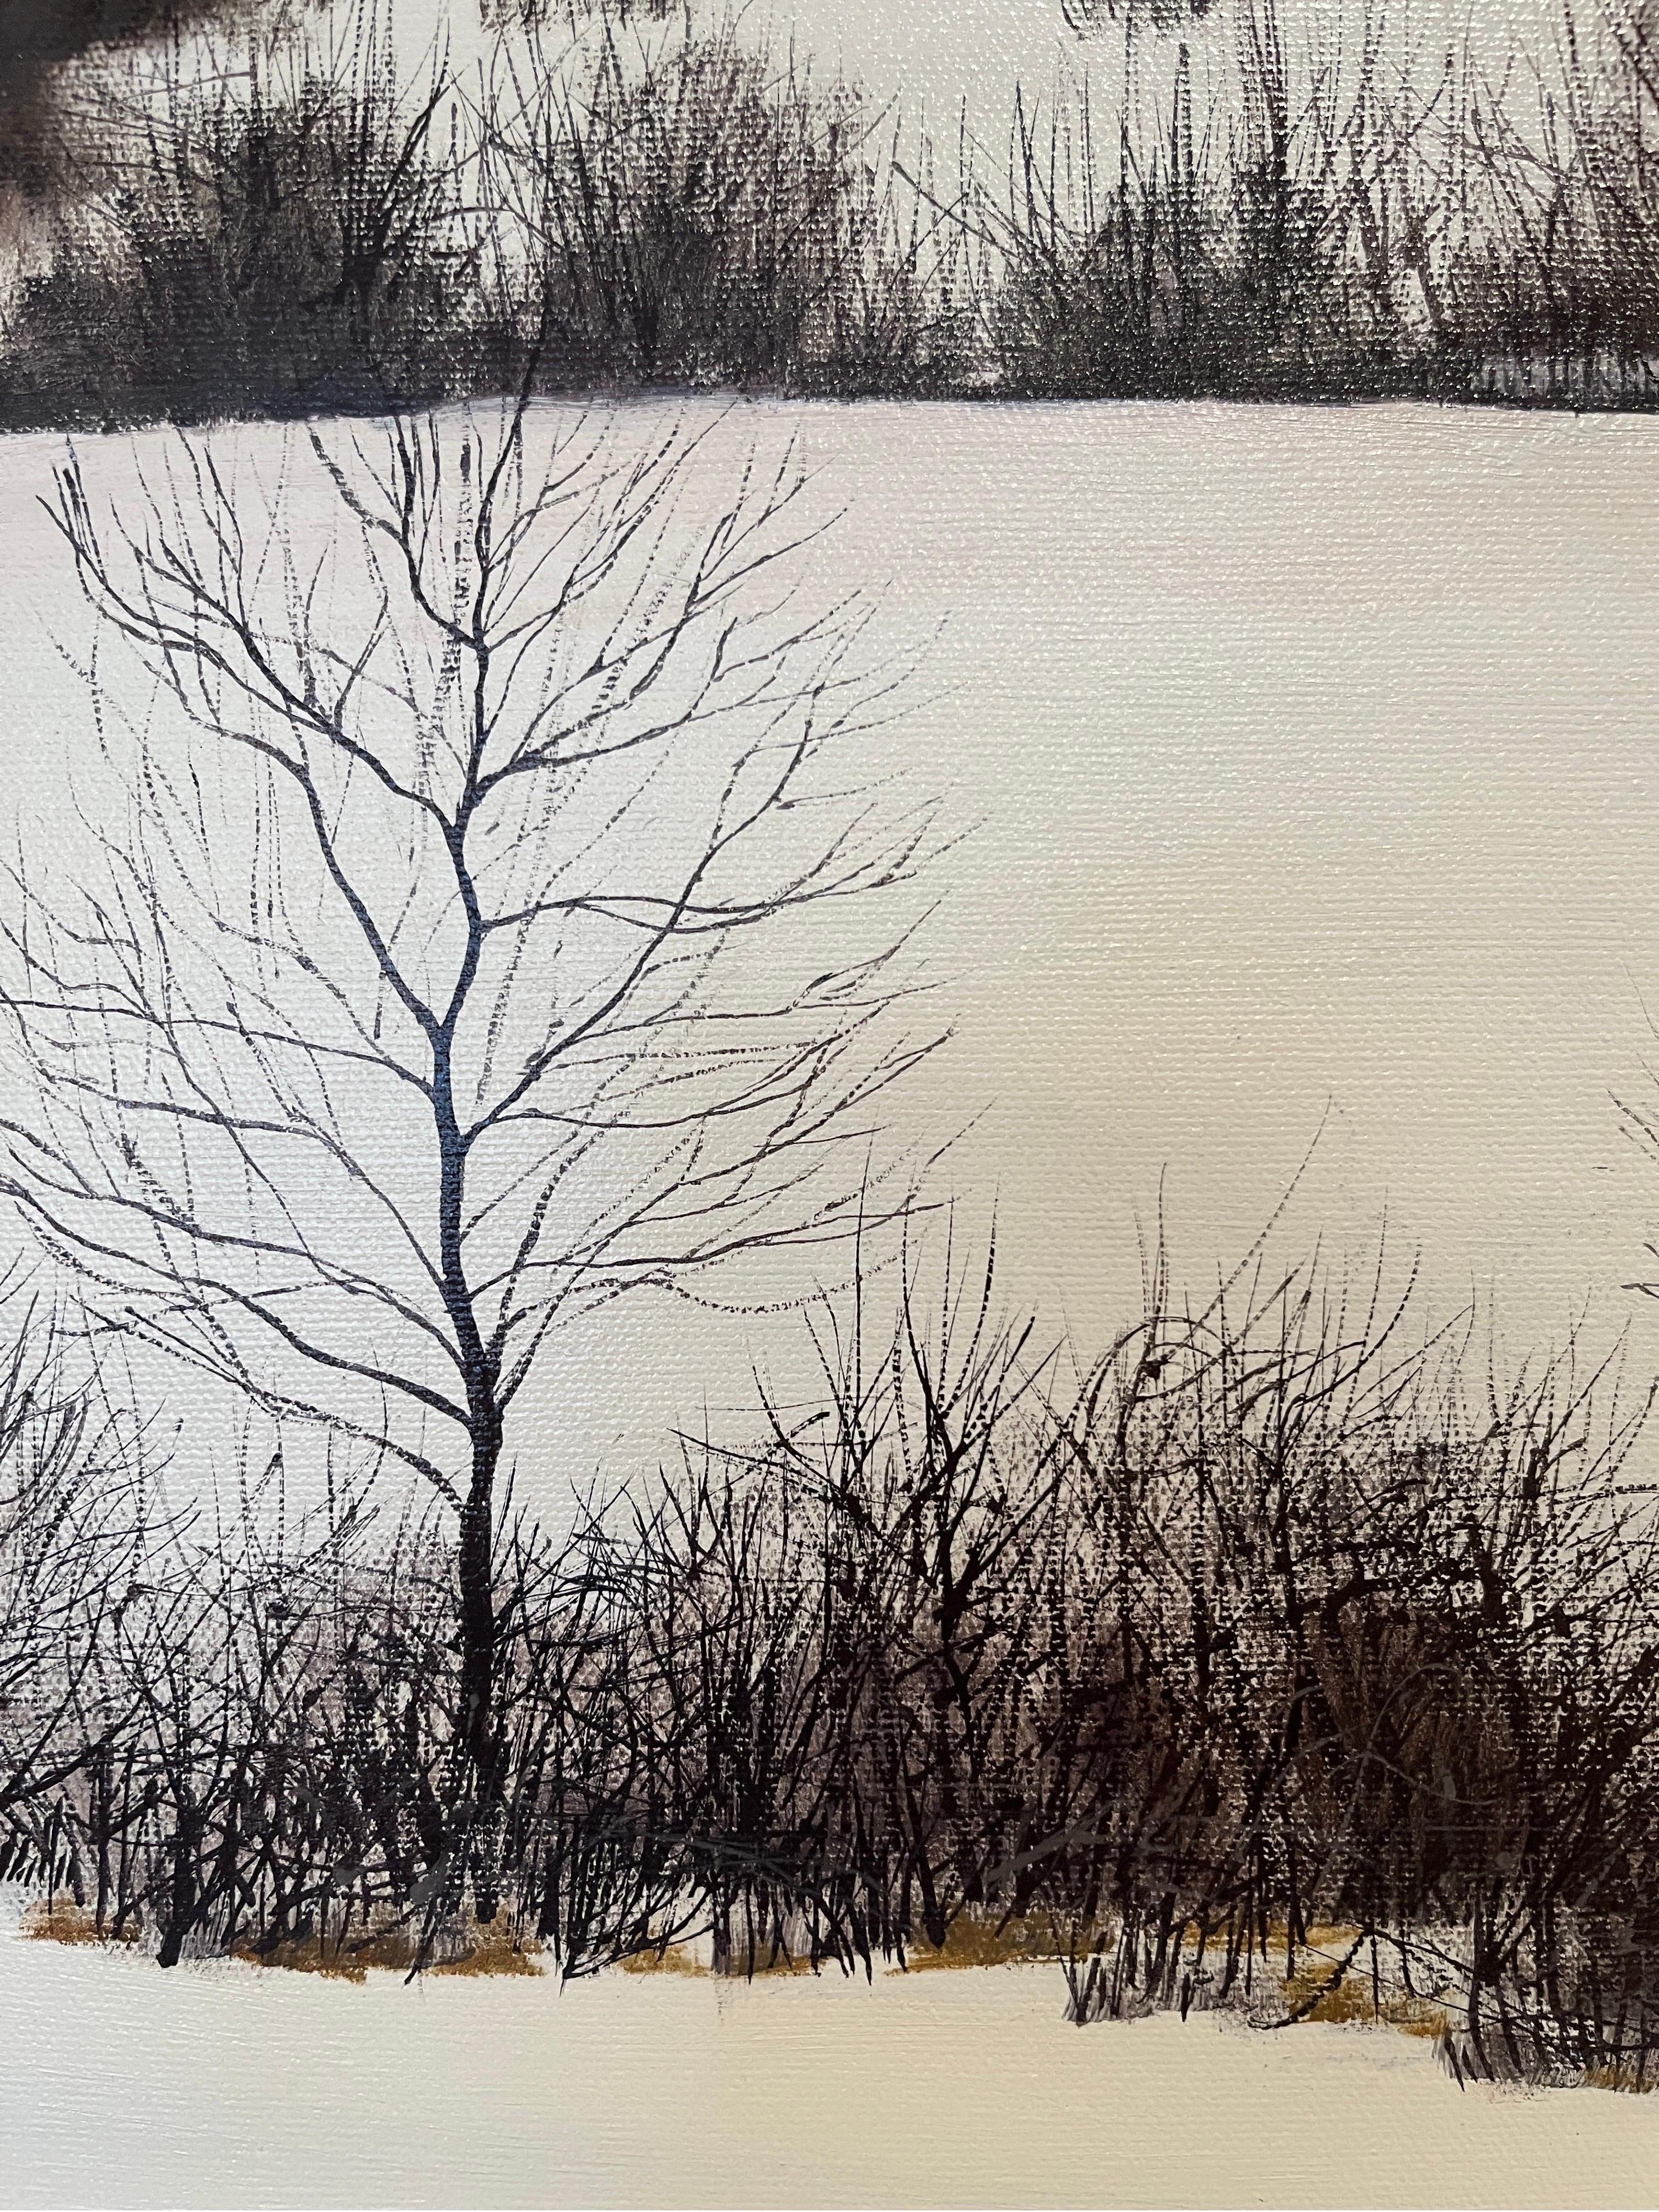 Il s'agit d'une peinture à l'huile originale sur toile. Elle représente une route sinueuse du Maine en hiver. Elle fait partie d'une paire, l'autre œuvre représentant la même scène en été. 
Les deux sont actuellement mis aux enchères ici.

Williams